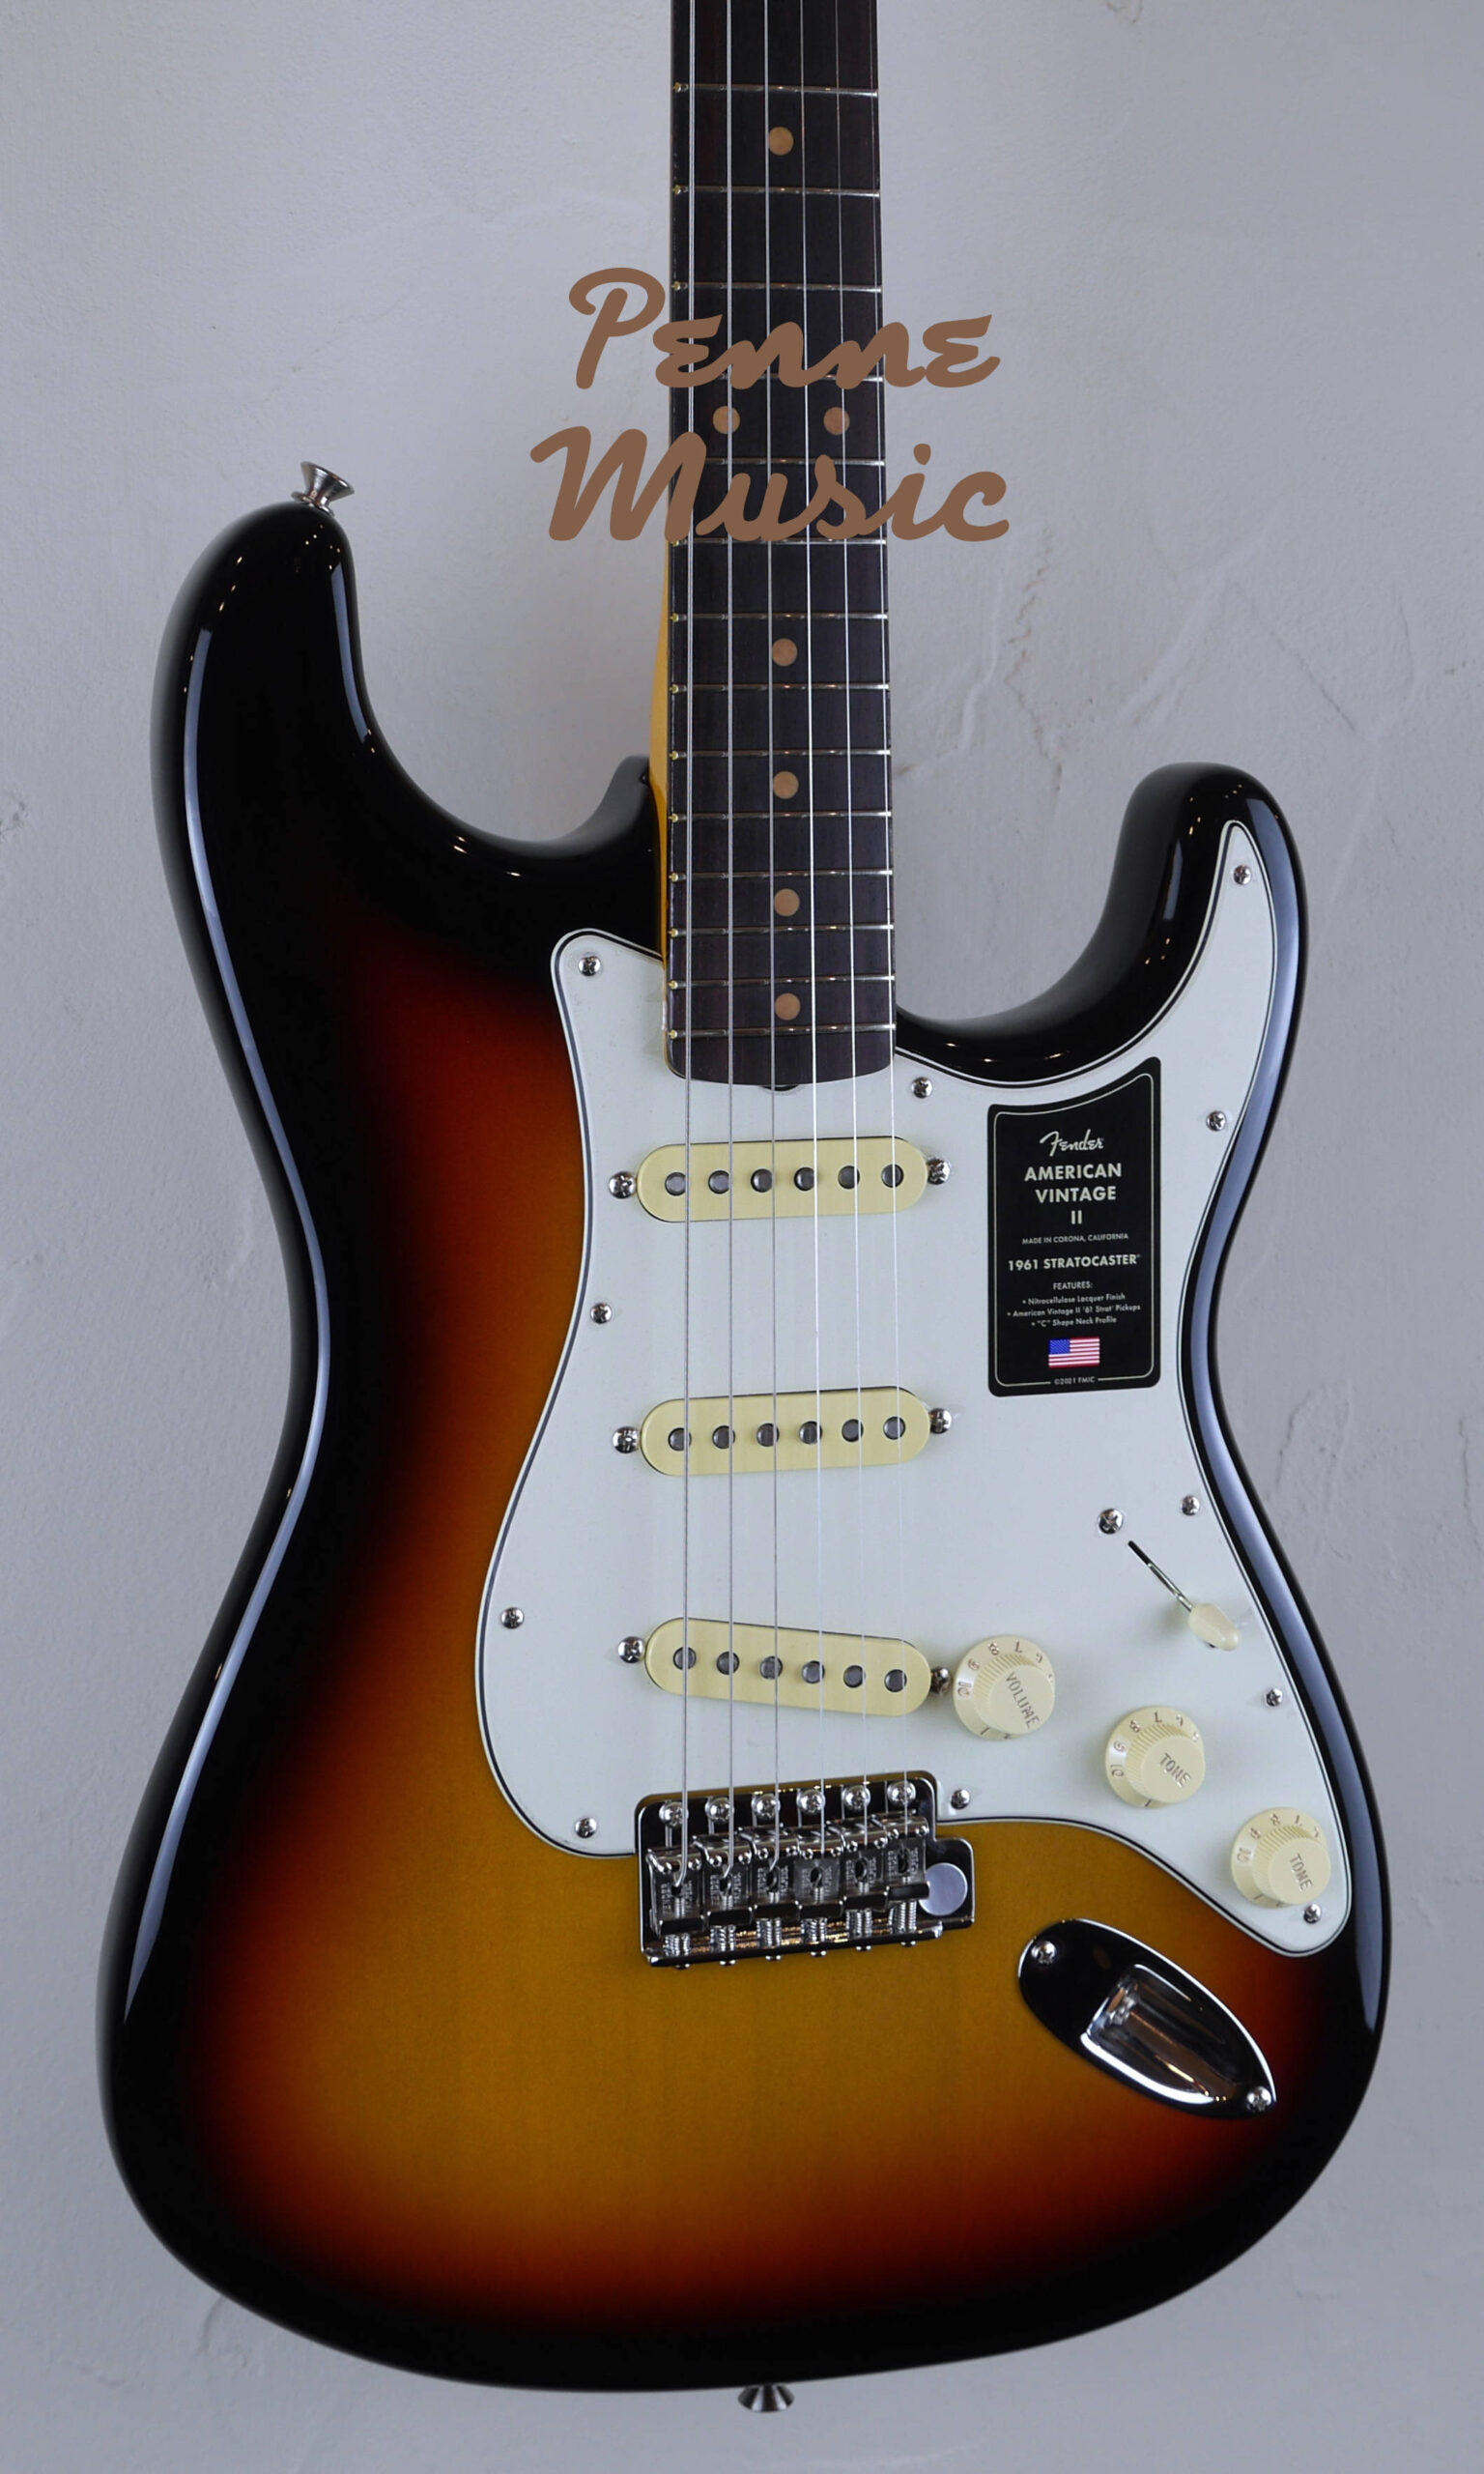 Fender American Vintage II 1961 Stratocaster 3-Color Sunburst 4